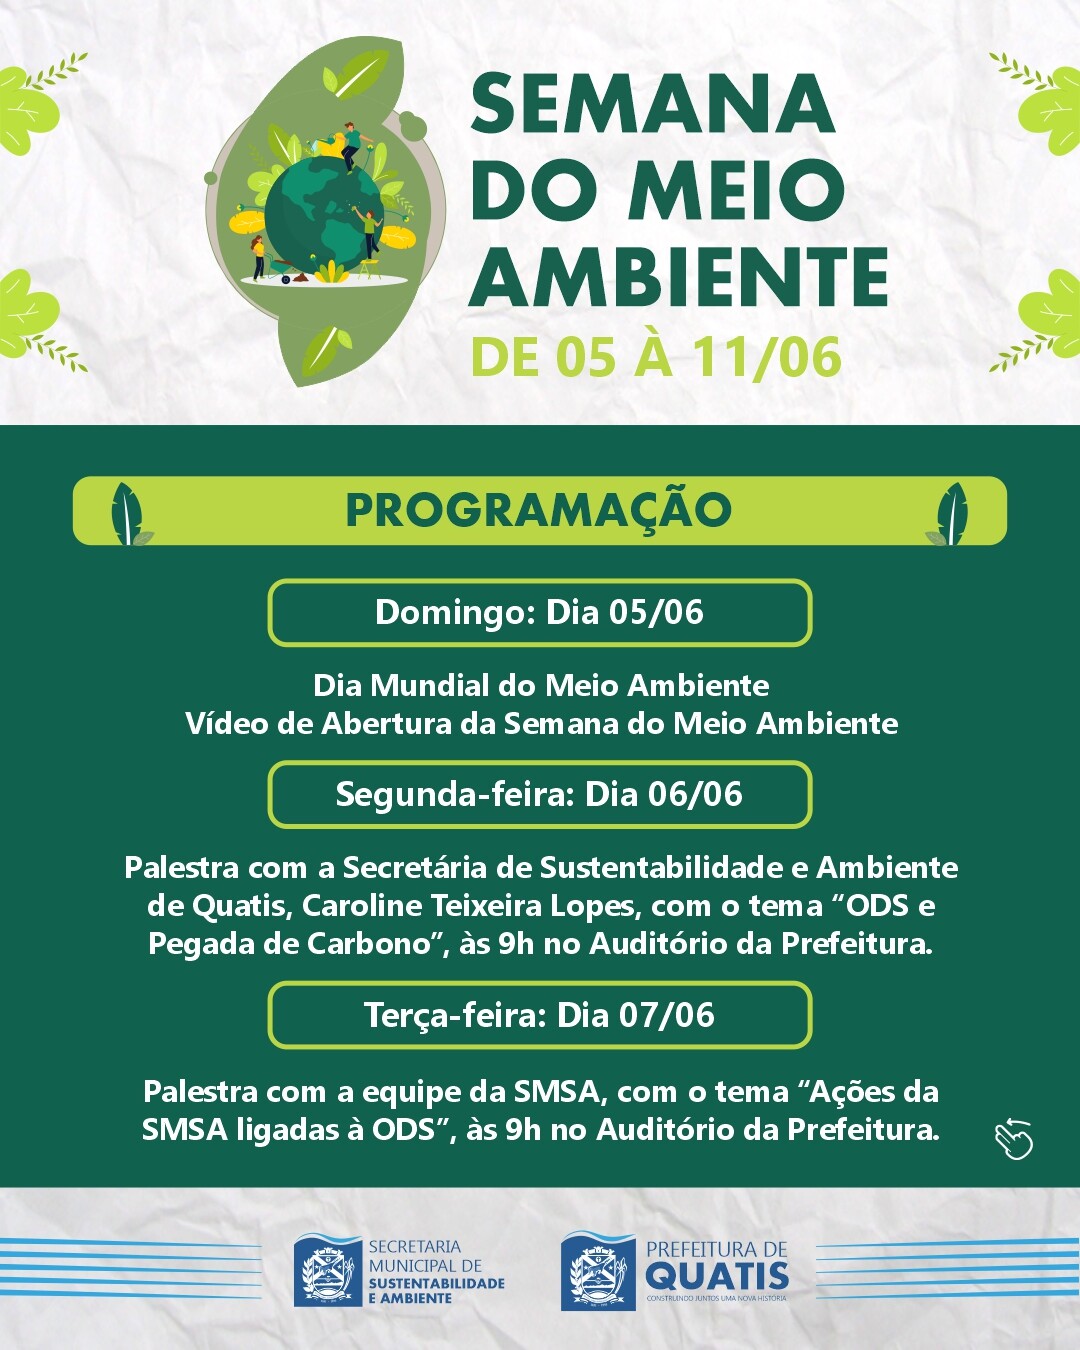 Dia do Meio Ambiente: campanha on-line, vídeo de alunos e quiz marcam a  data – Prefeitura de Vitória